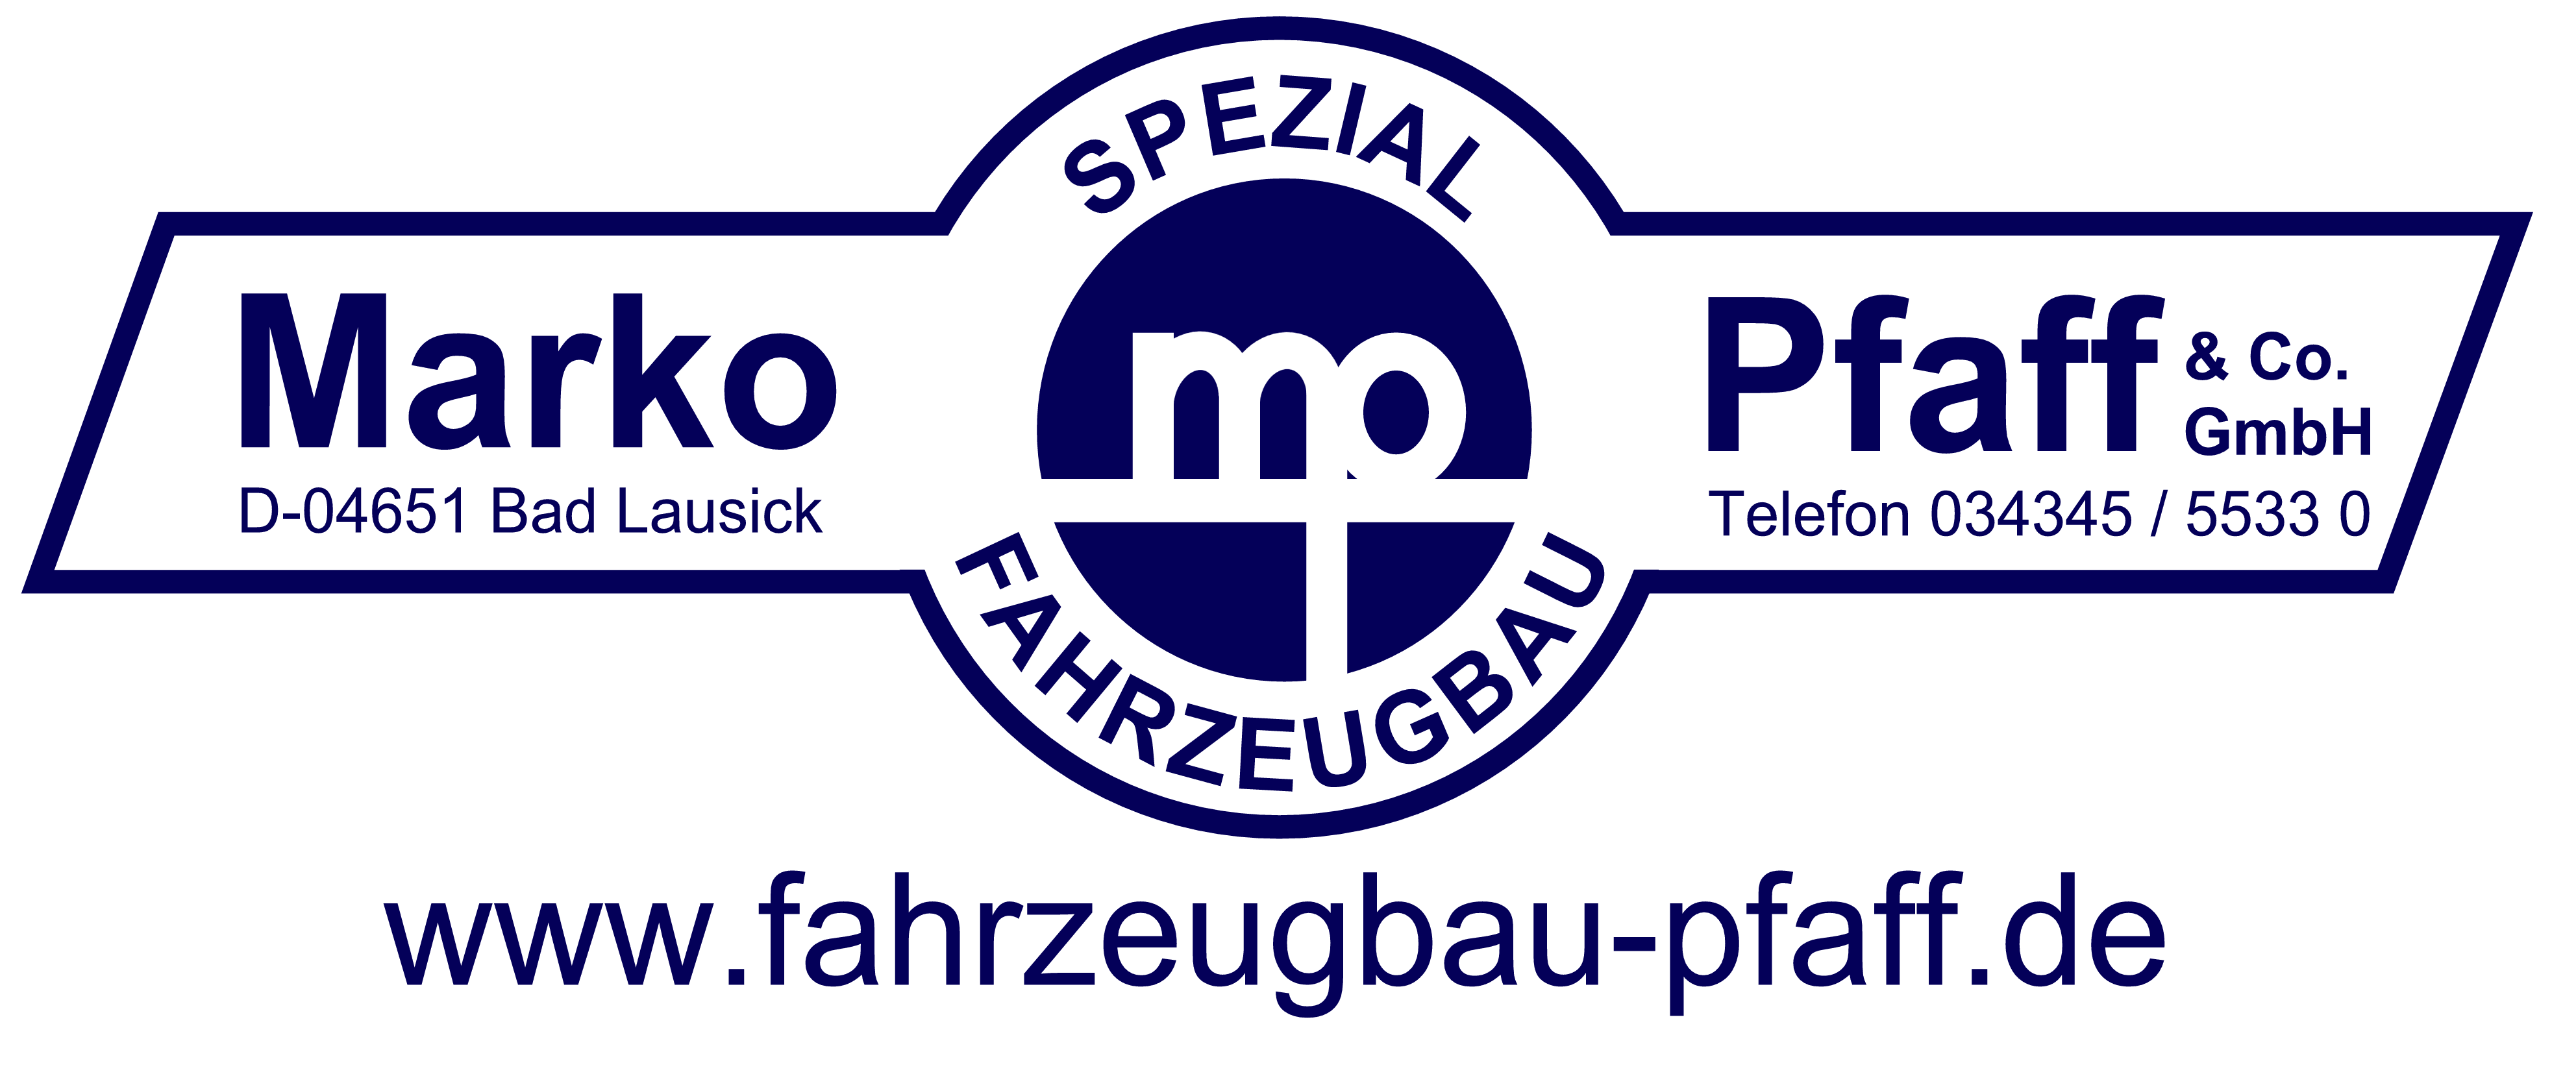 Marko Pfaff & Co. Spezialfahrzeugbau GmbH